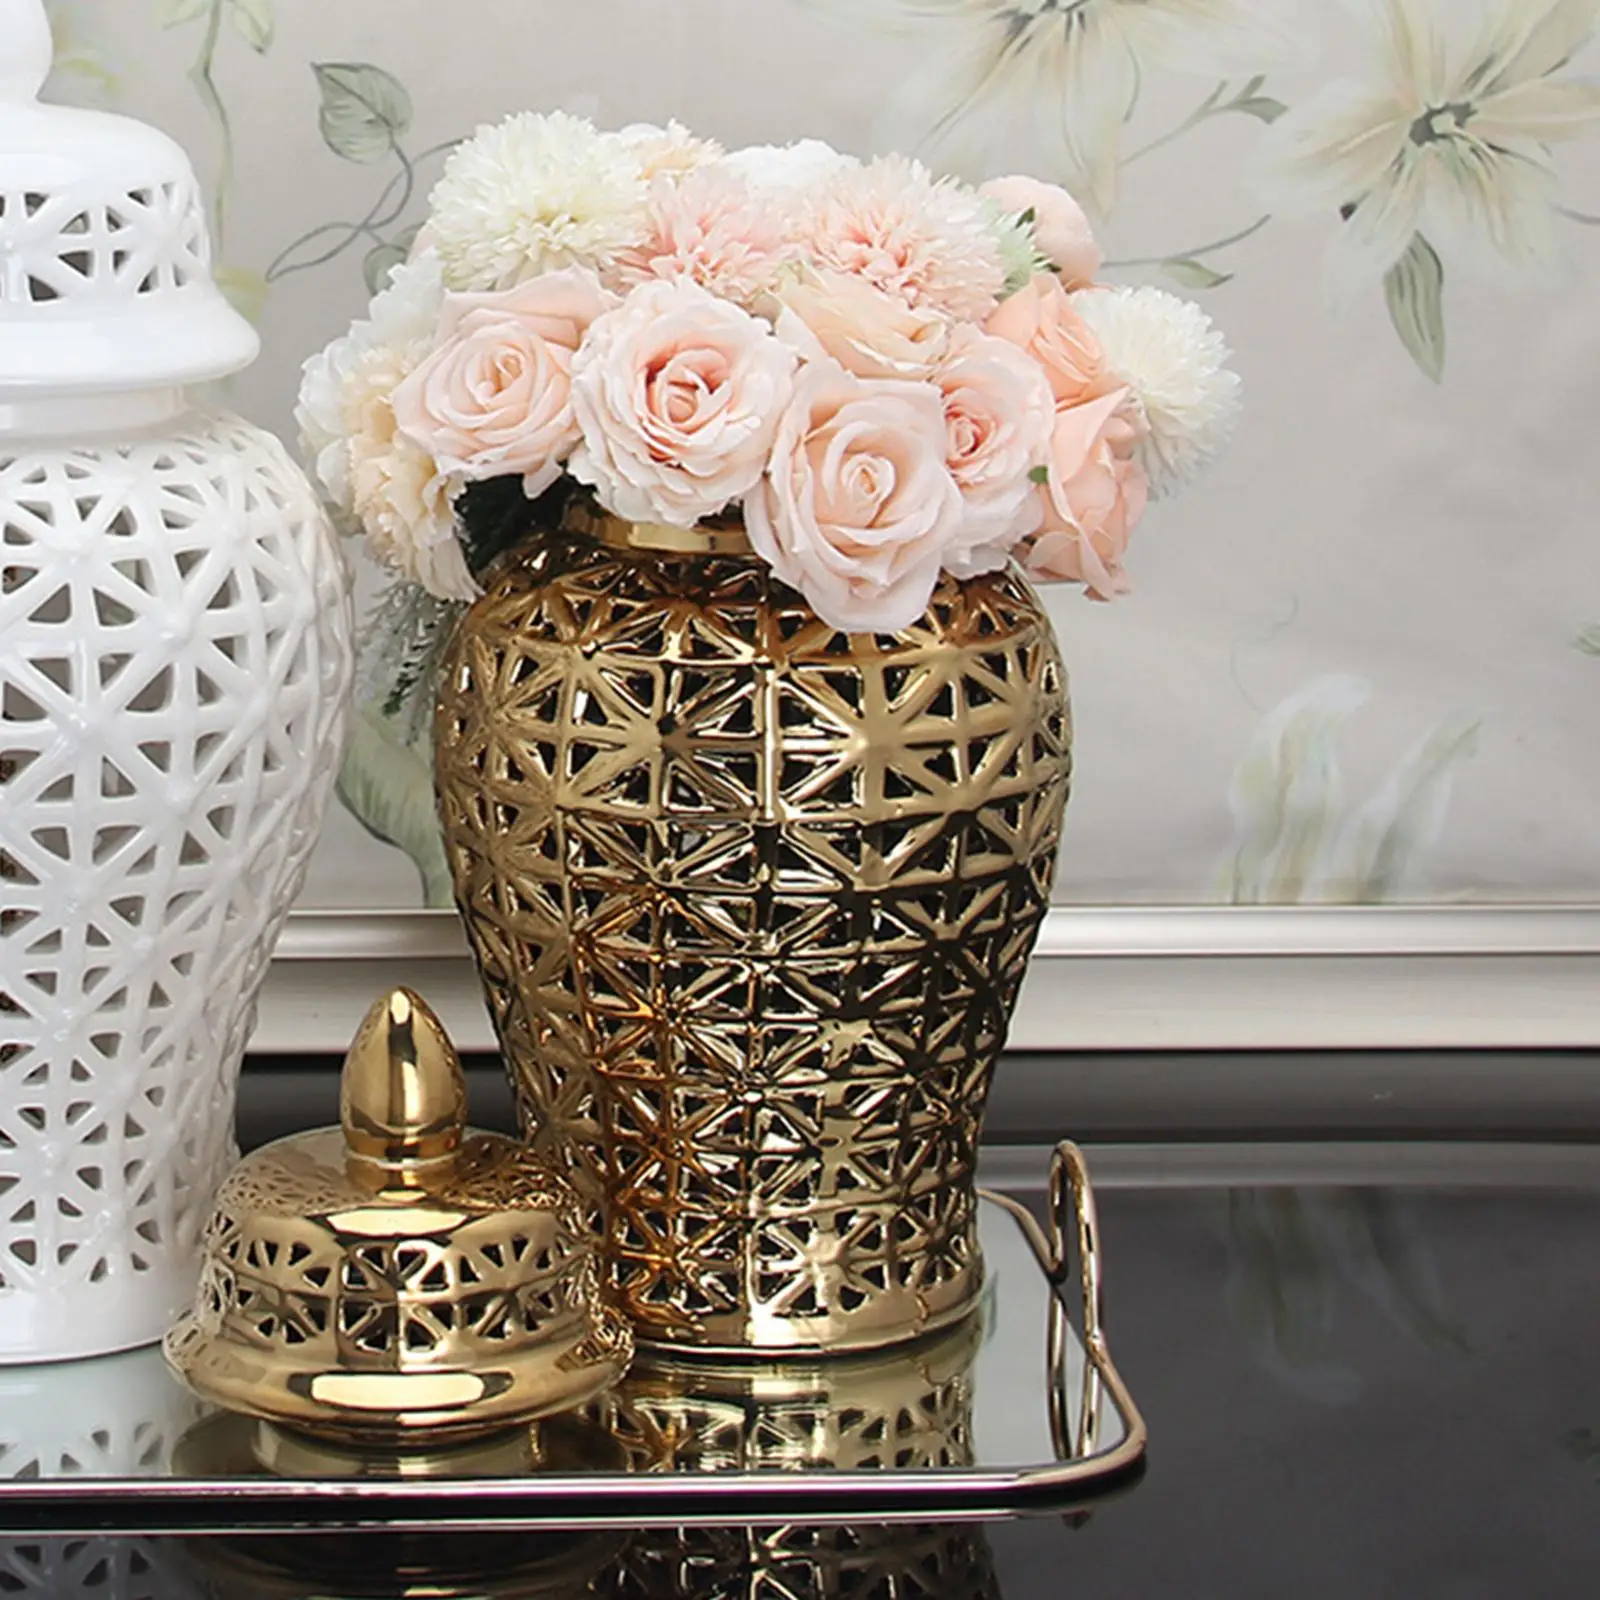 Ceramic Hollow Out Ginger Jar Temple Jar Flower Holder Decorative Table Center